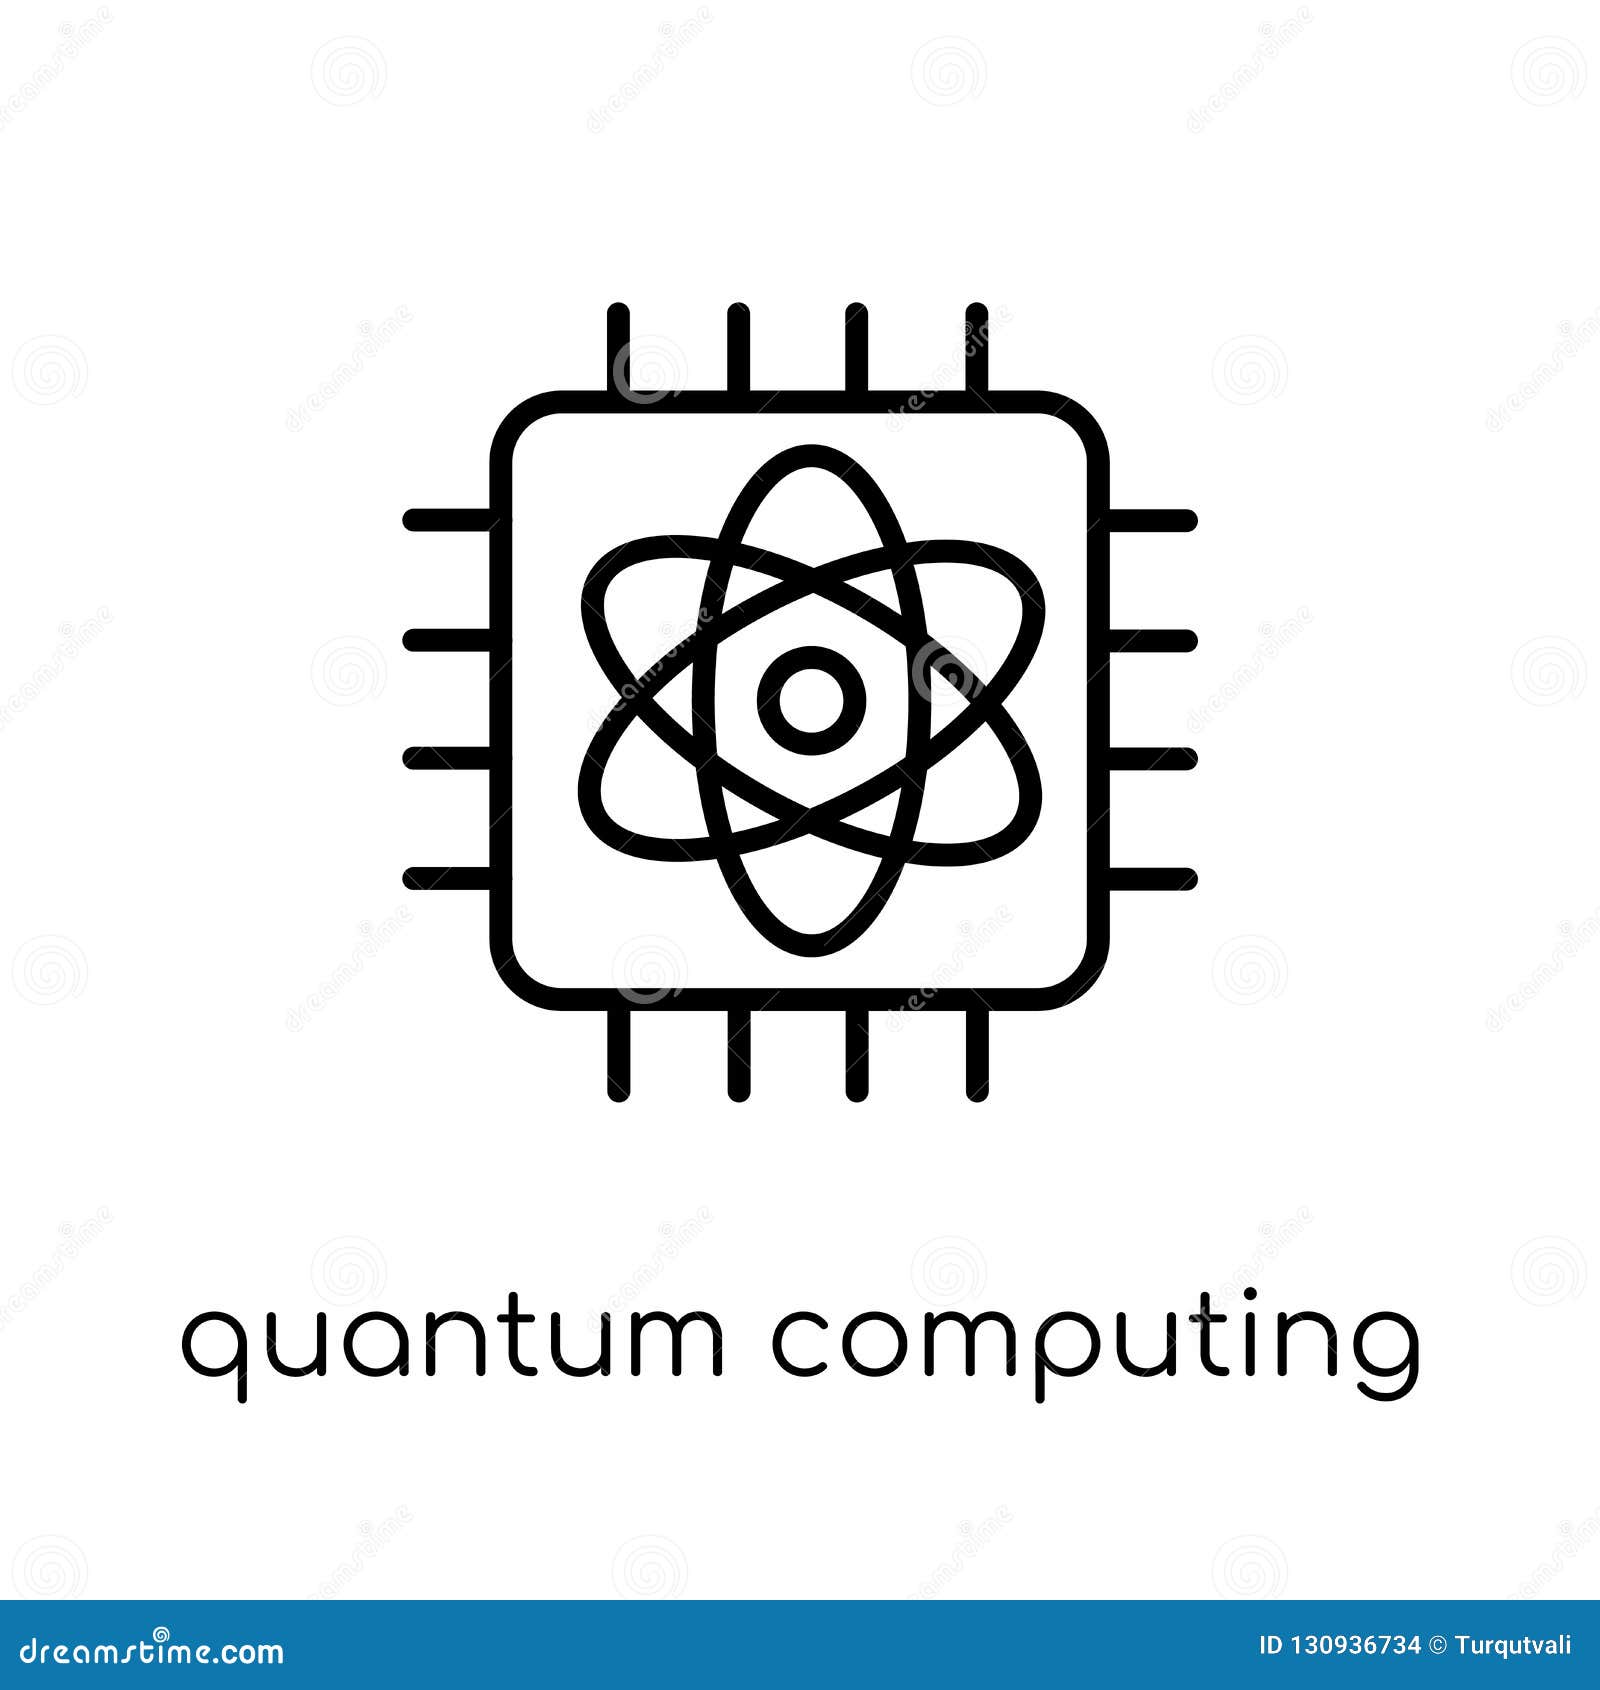 Quantum Method Logo